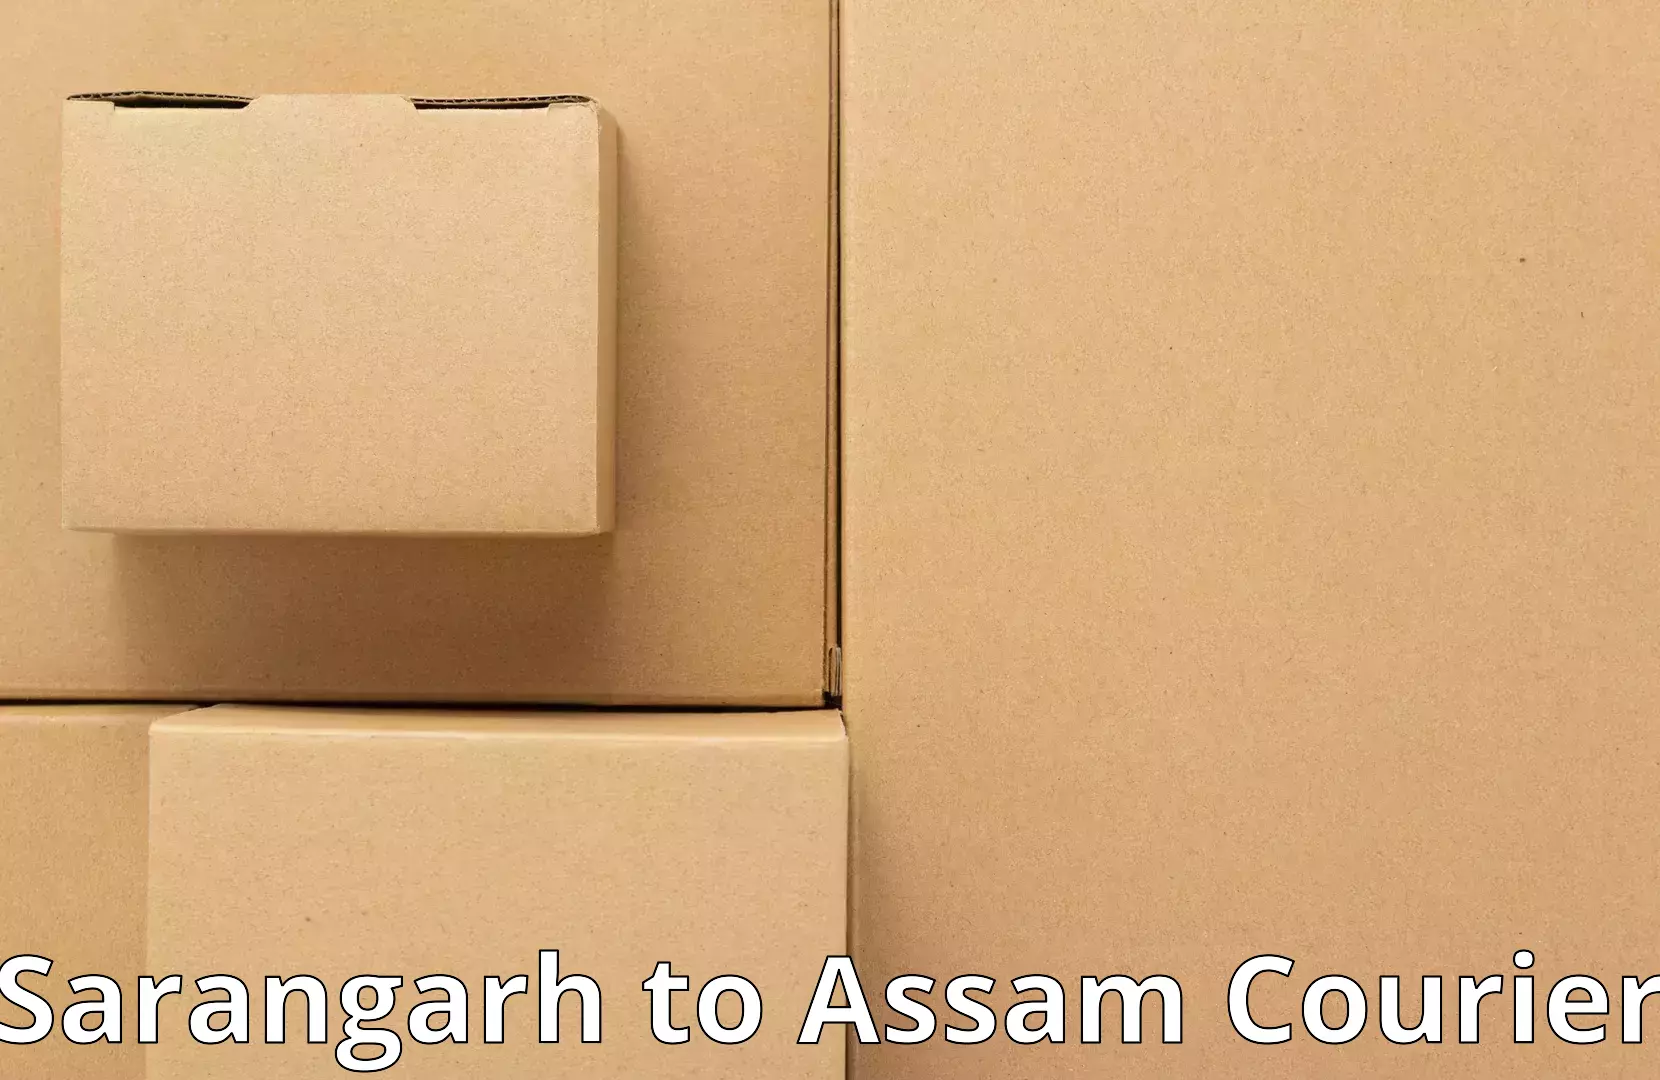 Home goods moving company Sarangarh to Assam